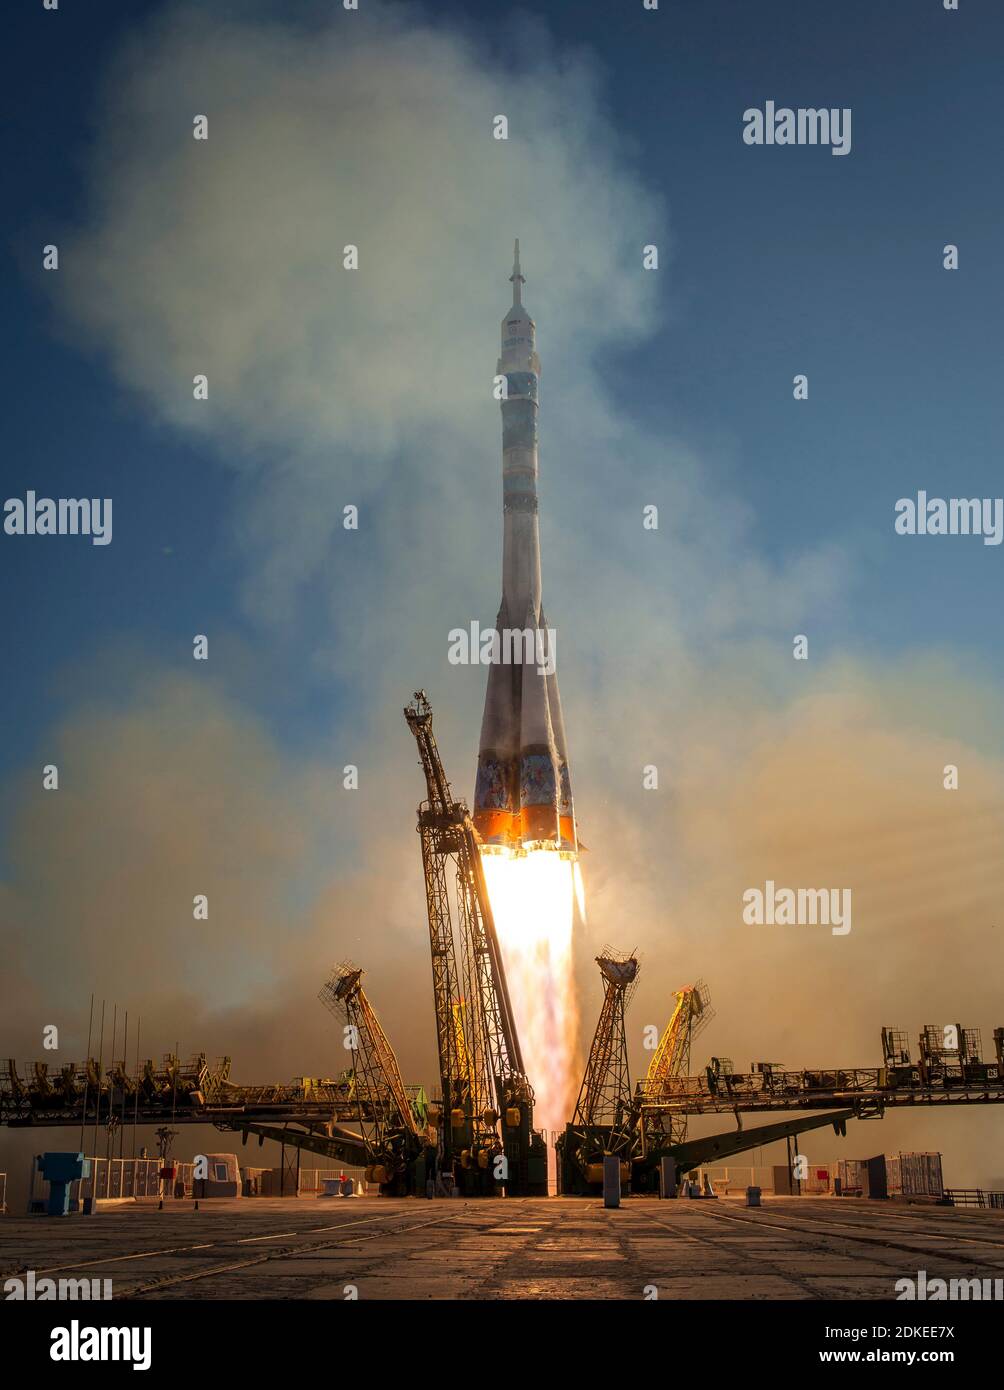 BAIKONUR COSMODROMO, KAZAKHSTAN - 07 novembre 2013 - torcia per le Olimpiadi invernali nello spazio...il razzo Soyuz TMA-11M viene lanciato con Expedition 38 Soyuz Co Foto Stock